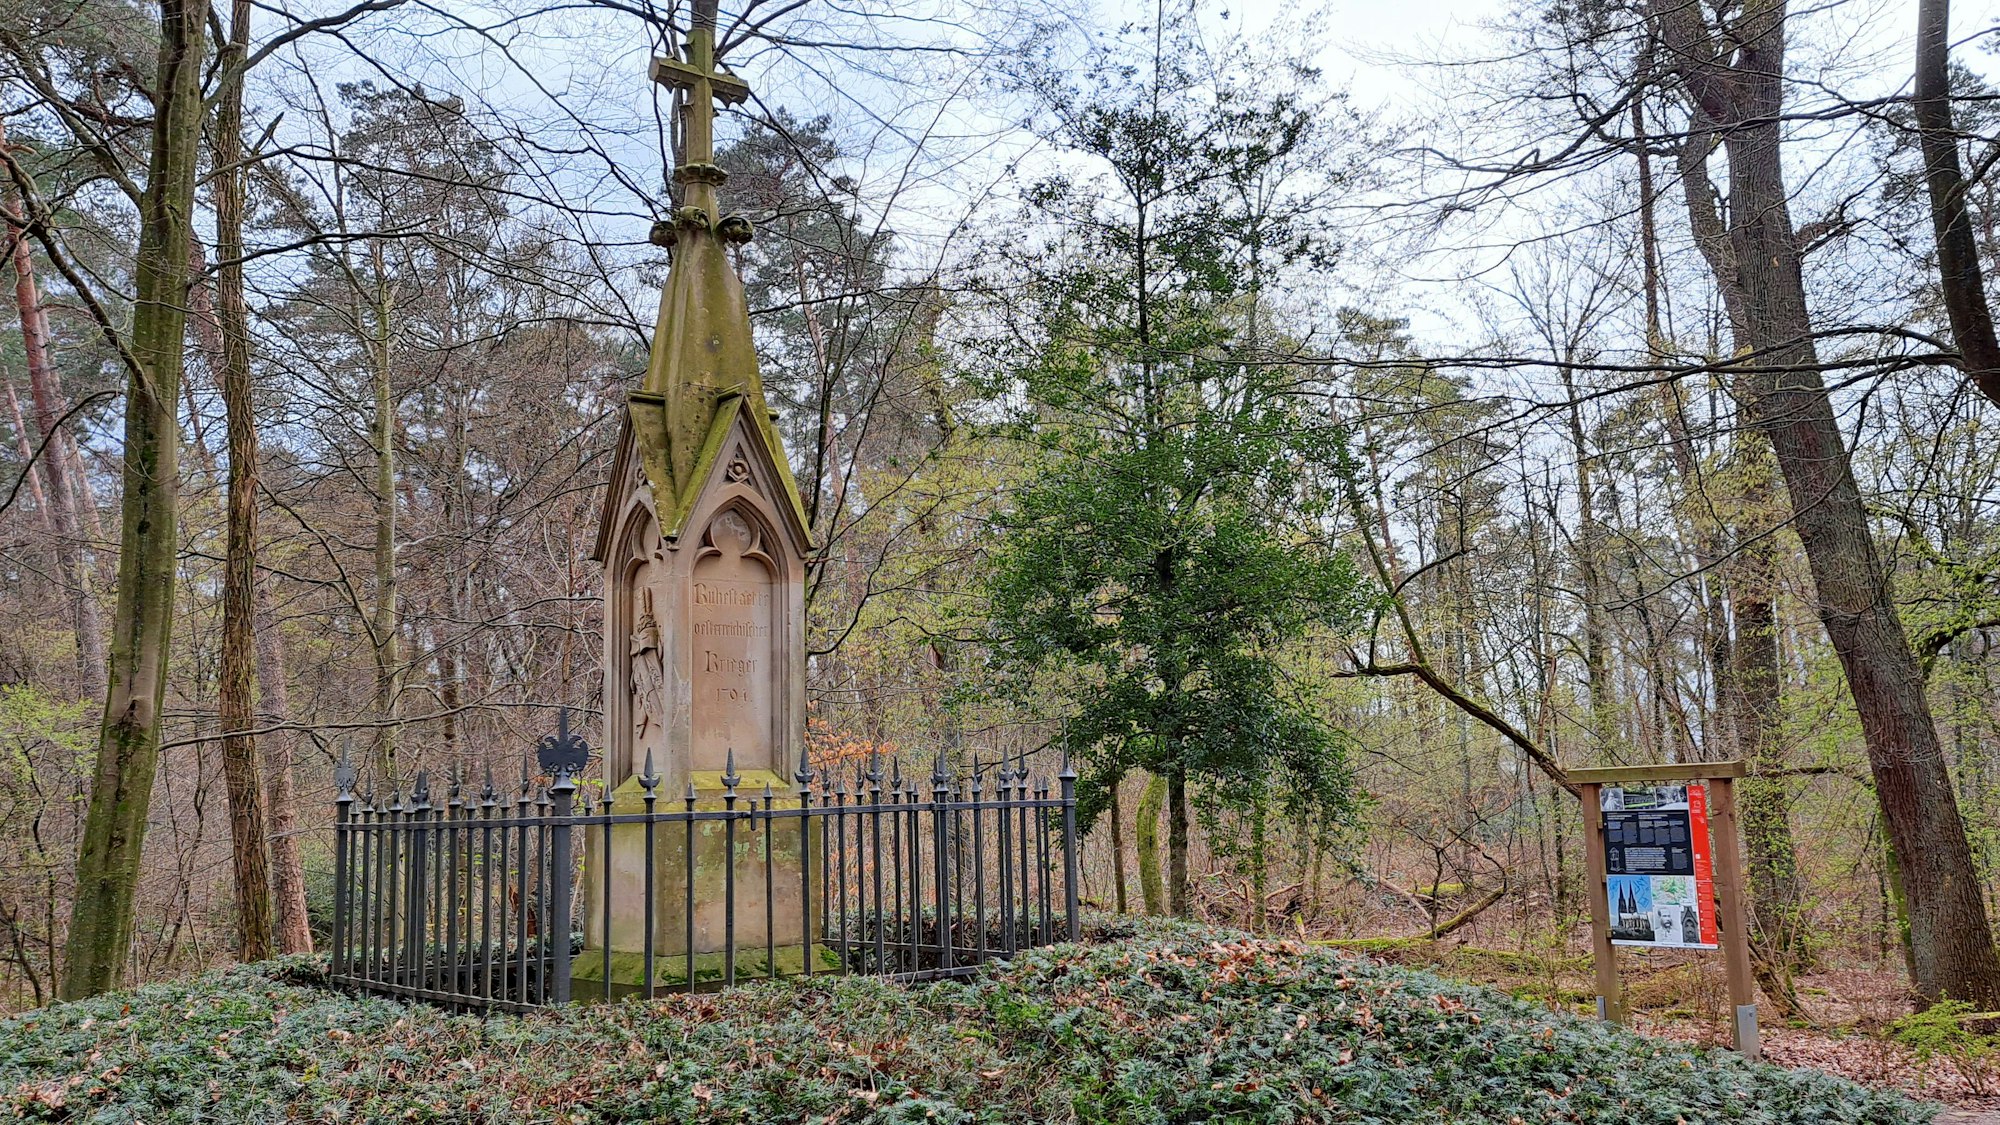 Ein gotisches Denkmal steht auf einem Hügel. Rechts im Hintergrund ist eine bunter Informationstafel zu sehen.